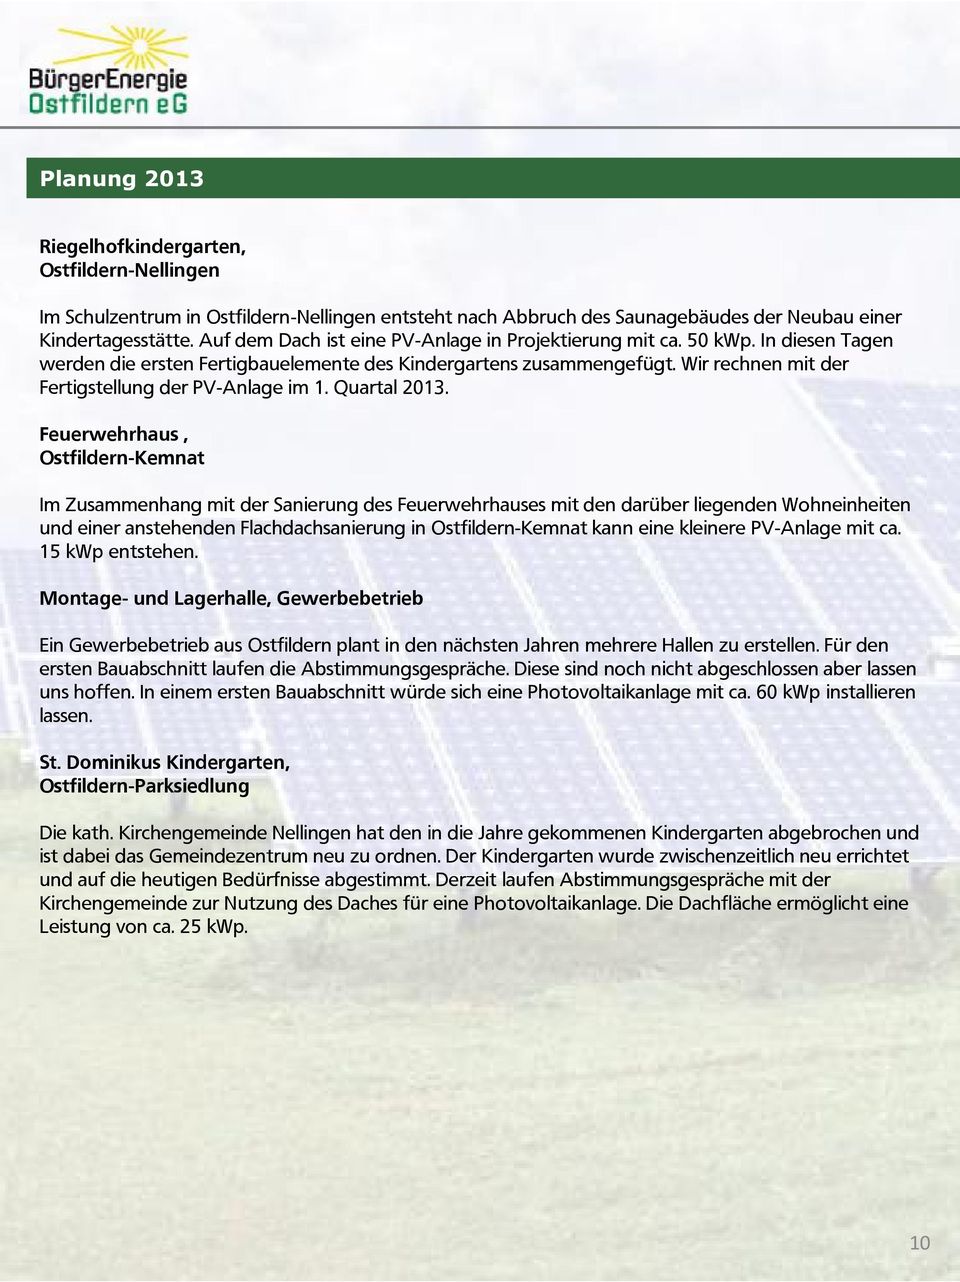 Wir rechnen mit der Fertigstellung der PV-Anlage im 1. Quartal 2013.